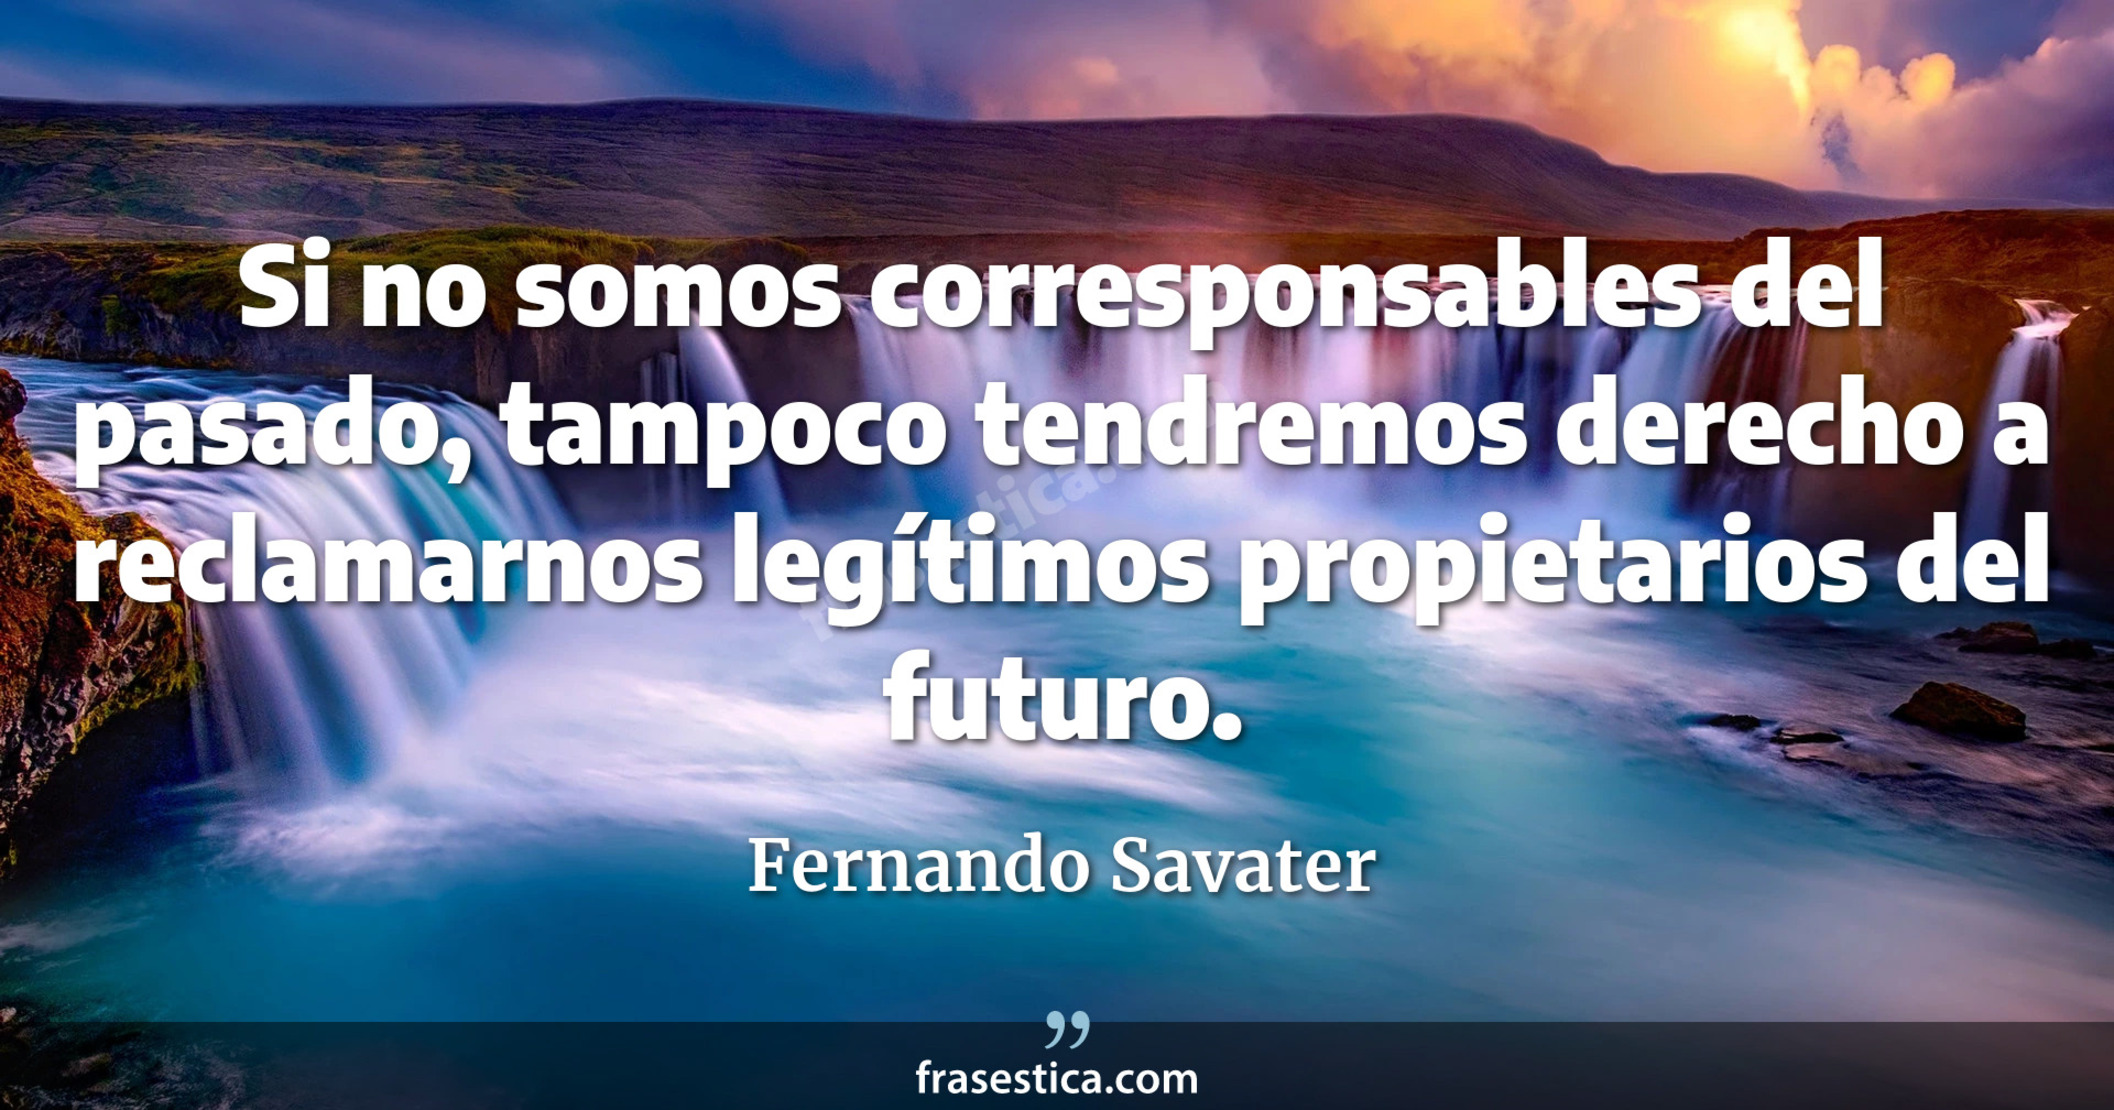 Si no somos corresponsables del pasado, tampoco tendremos derecho a reclamarnos legítimos propietarios del futuro. - Fernando Savater